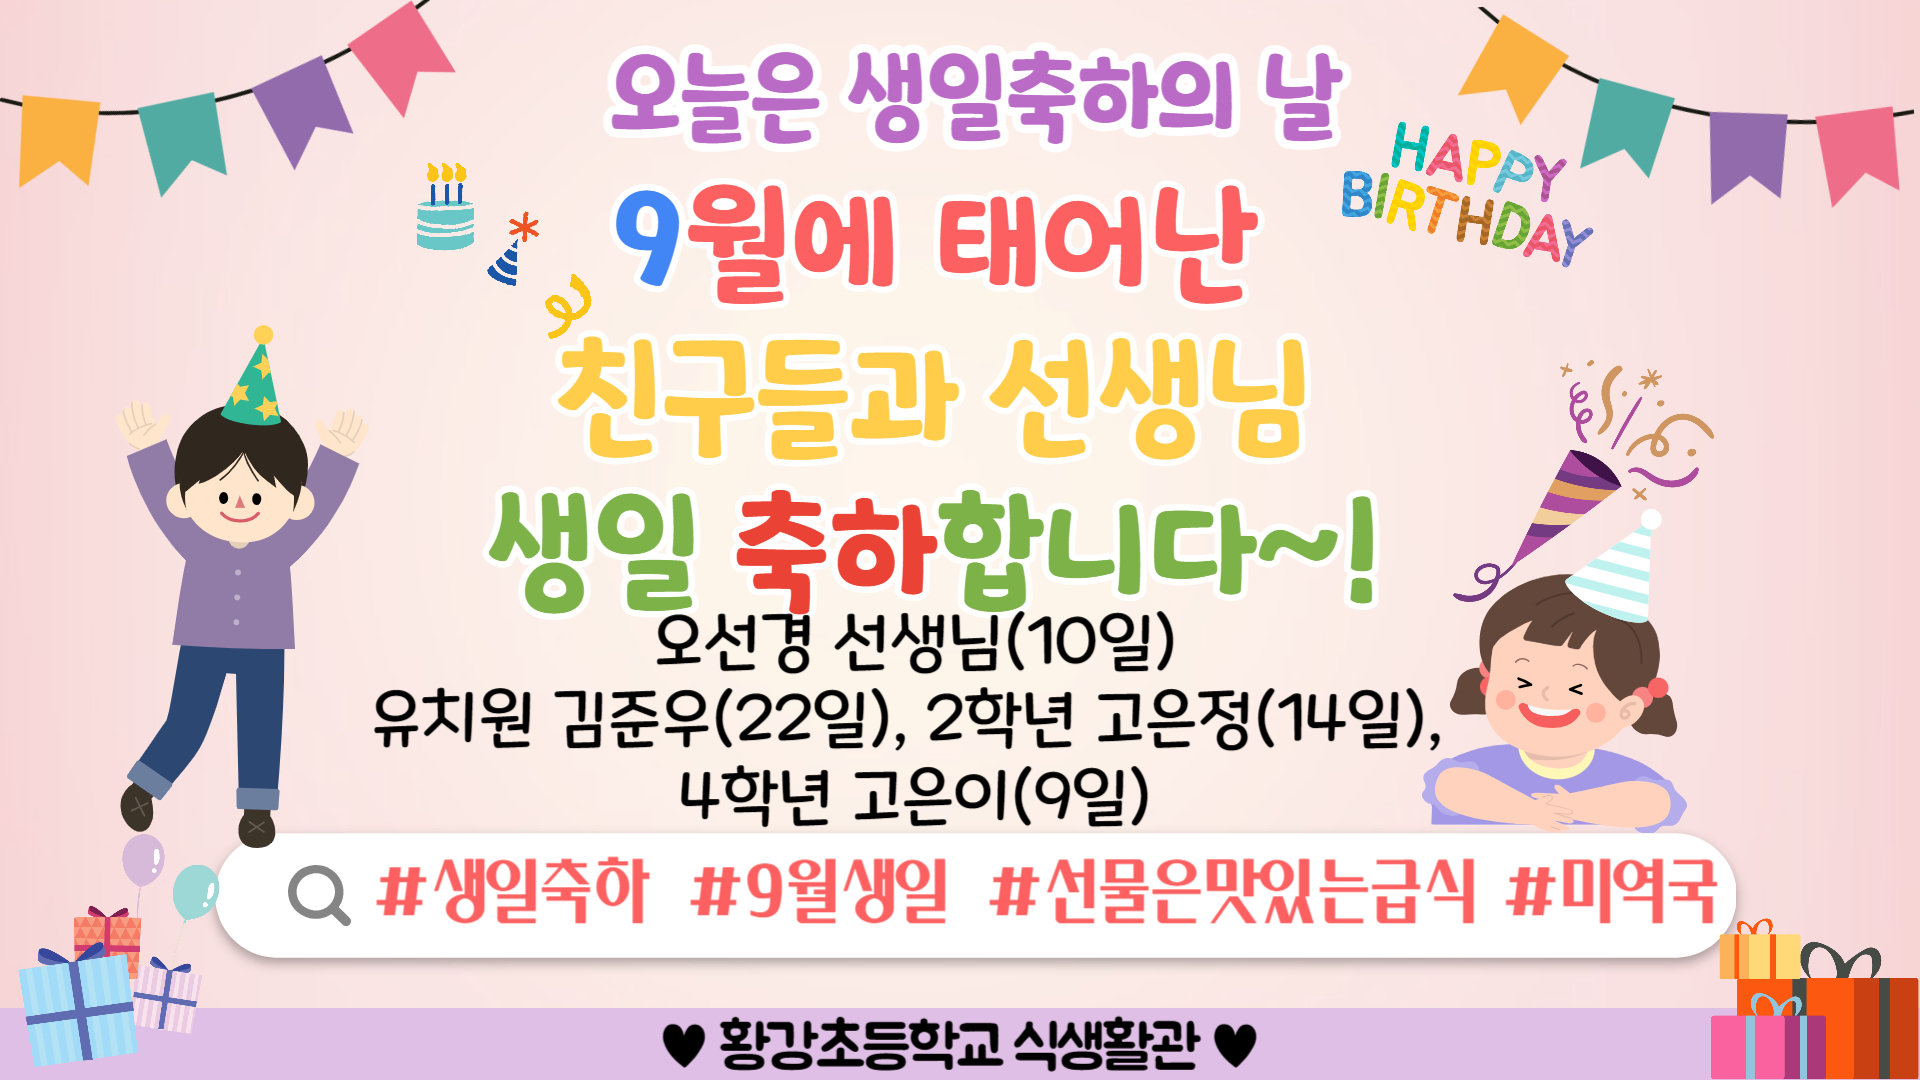 생일축하의날_POP_복사본 (1)-001 (2)